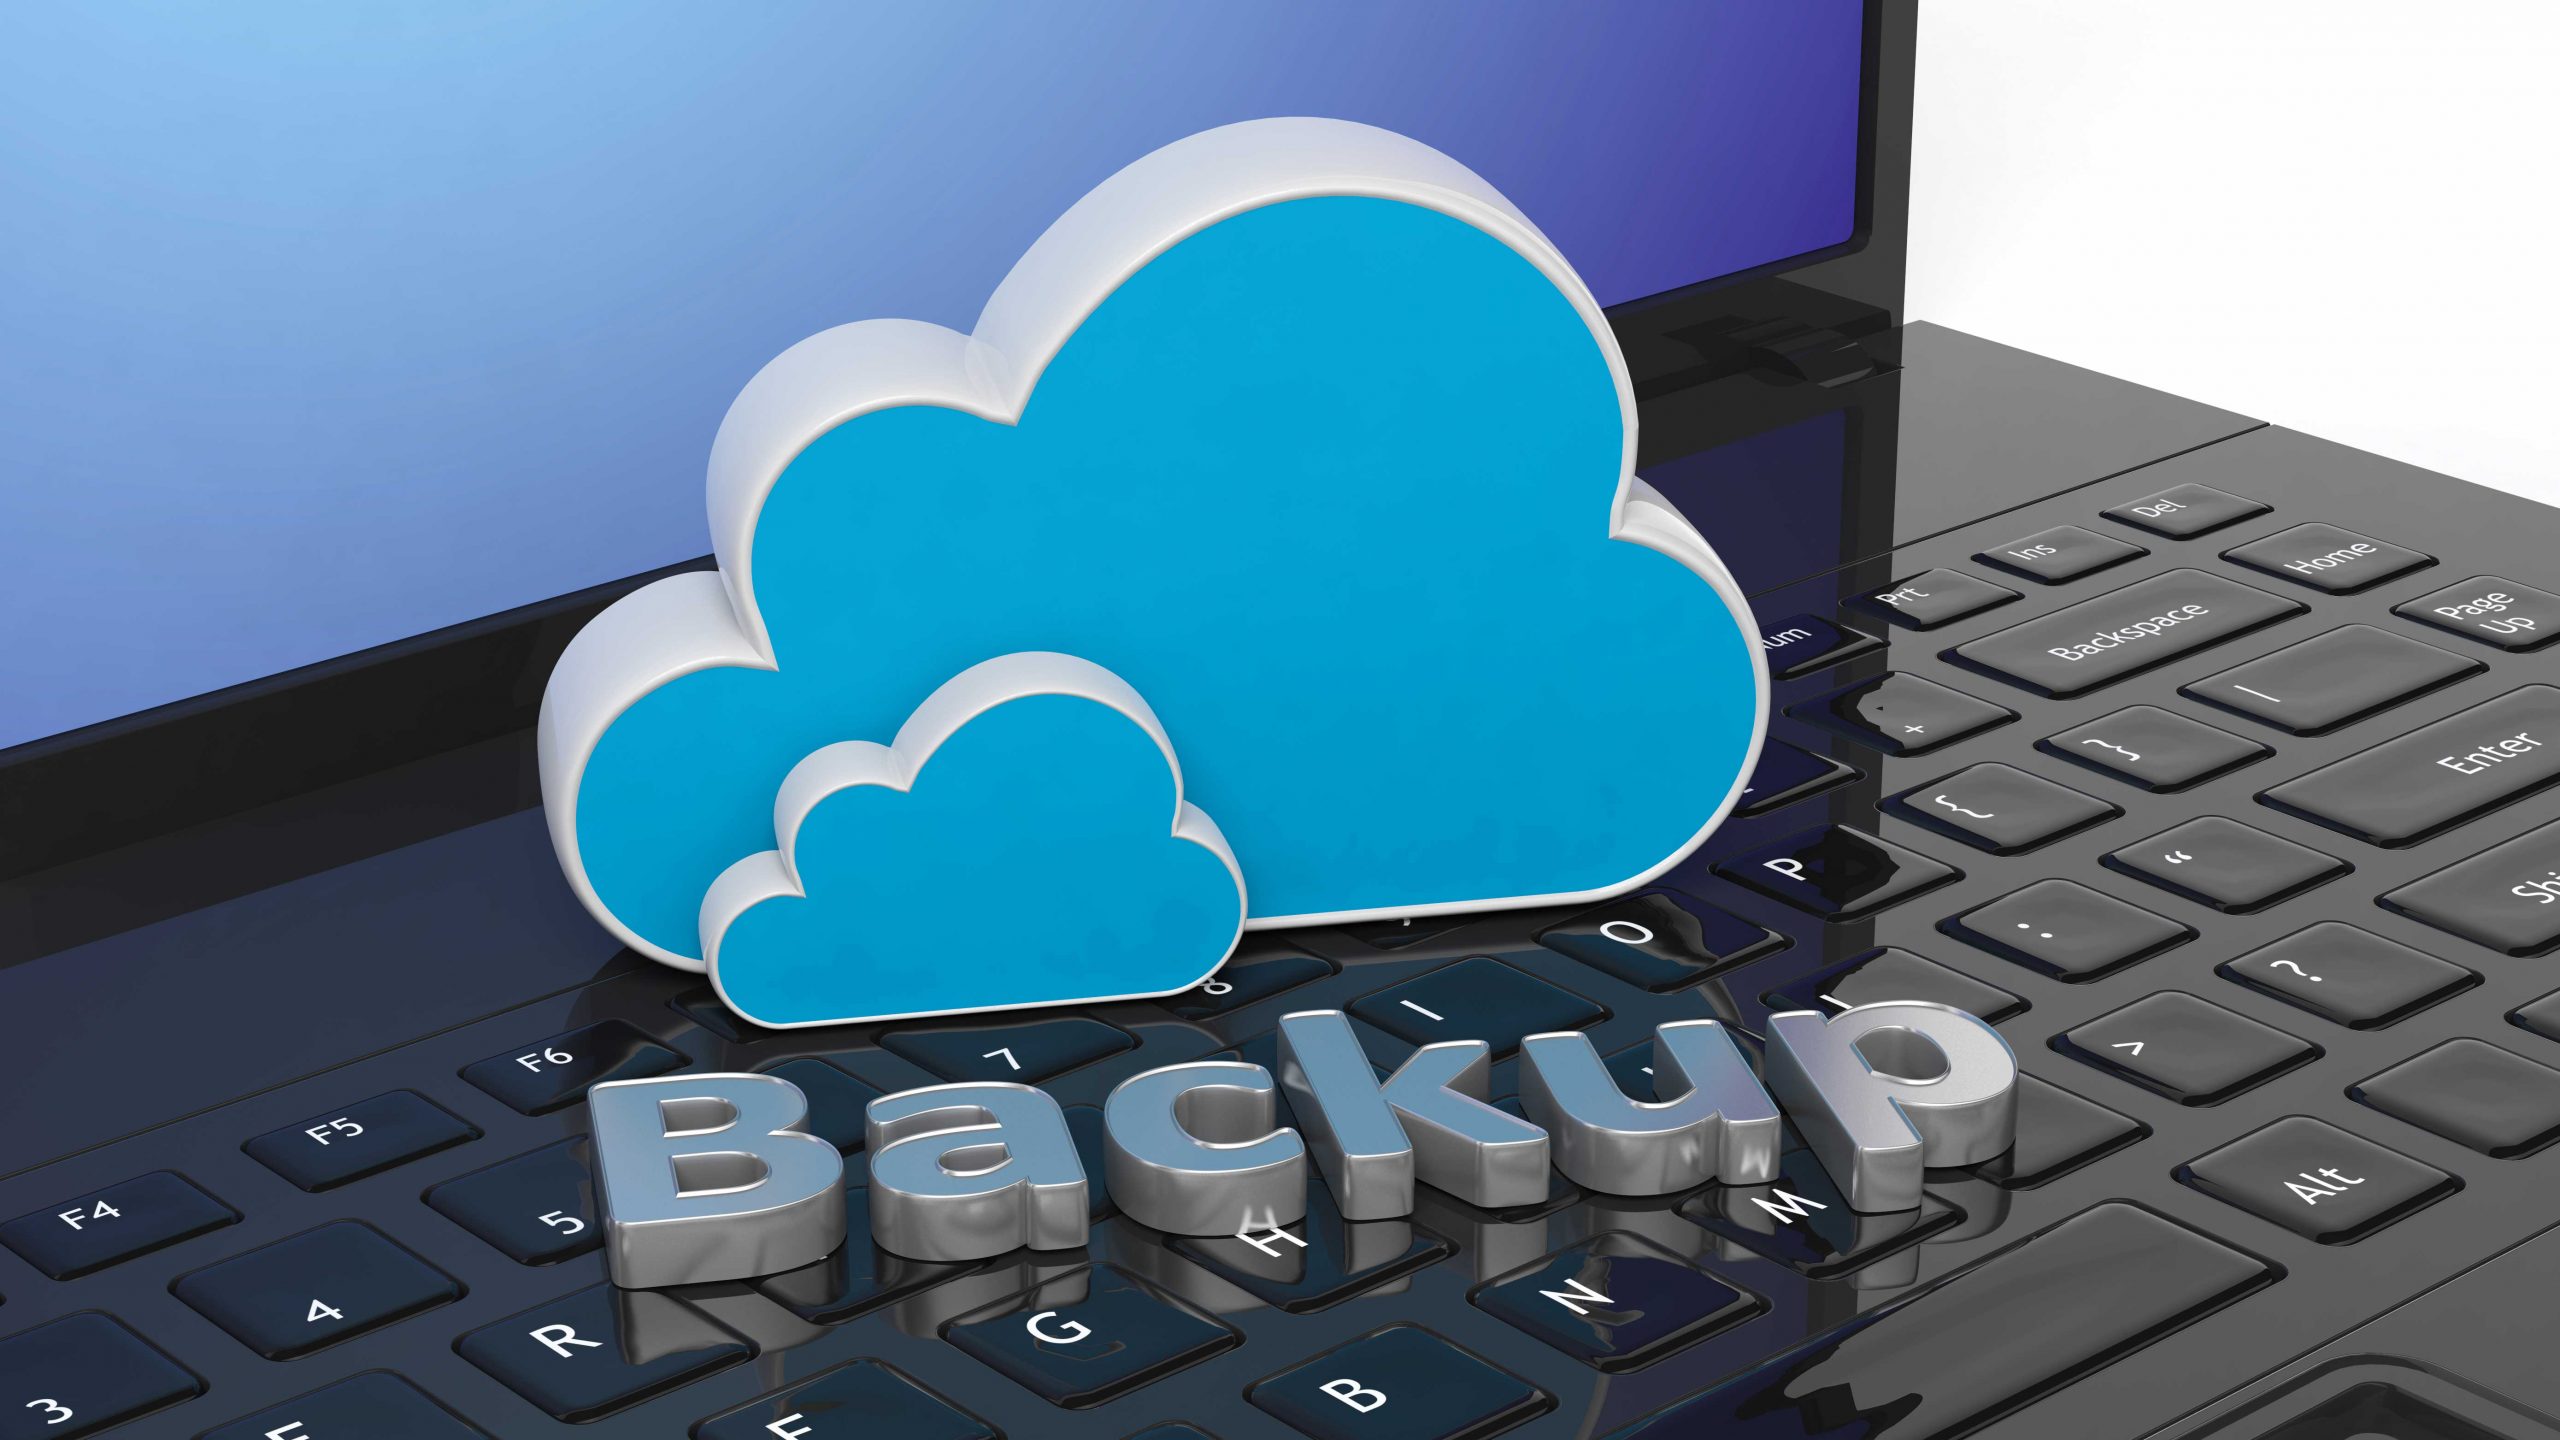 Backup : Ihre Daten sicher und geschützt!